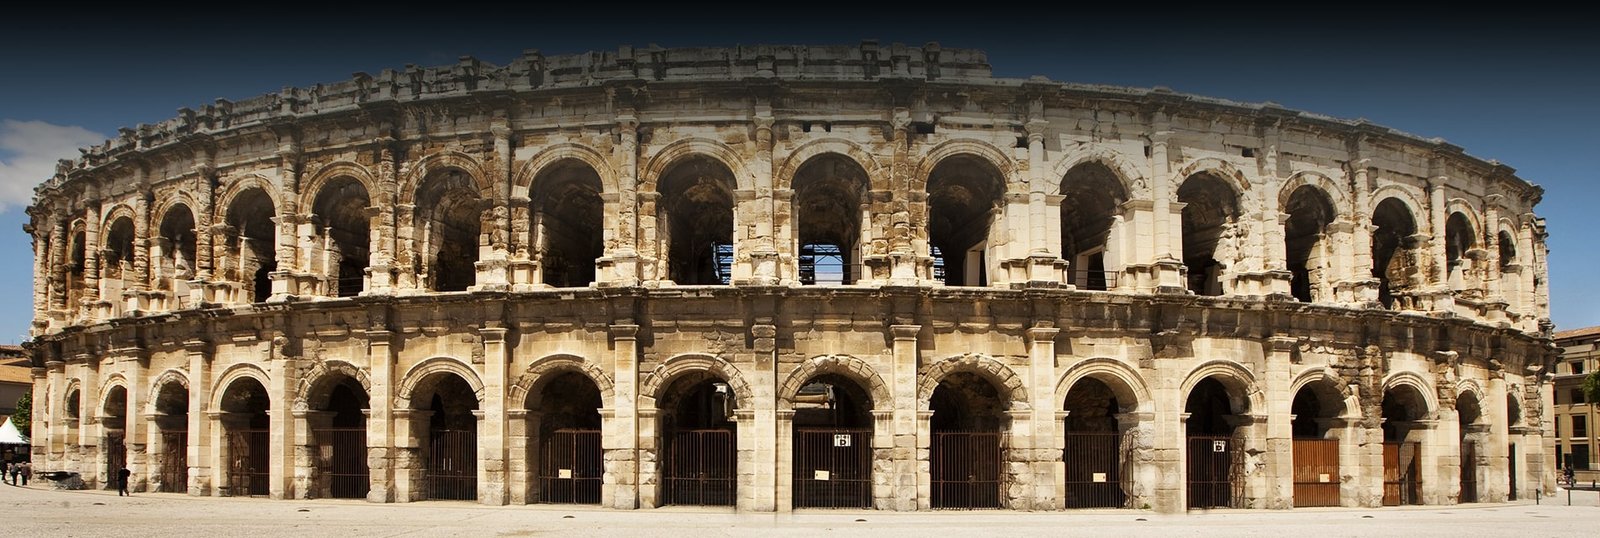 Anfiteatro Nimes header - Orígenes de Europa